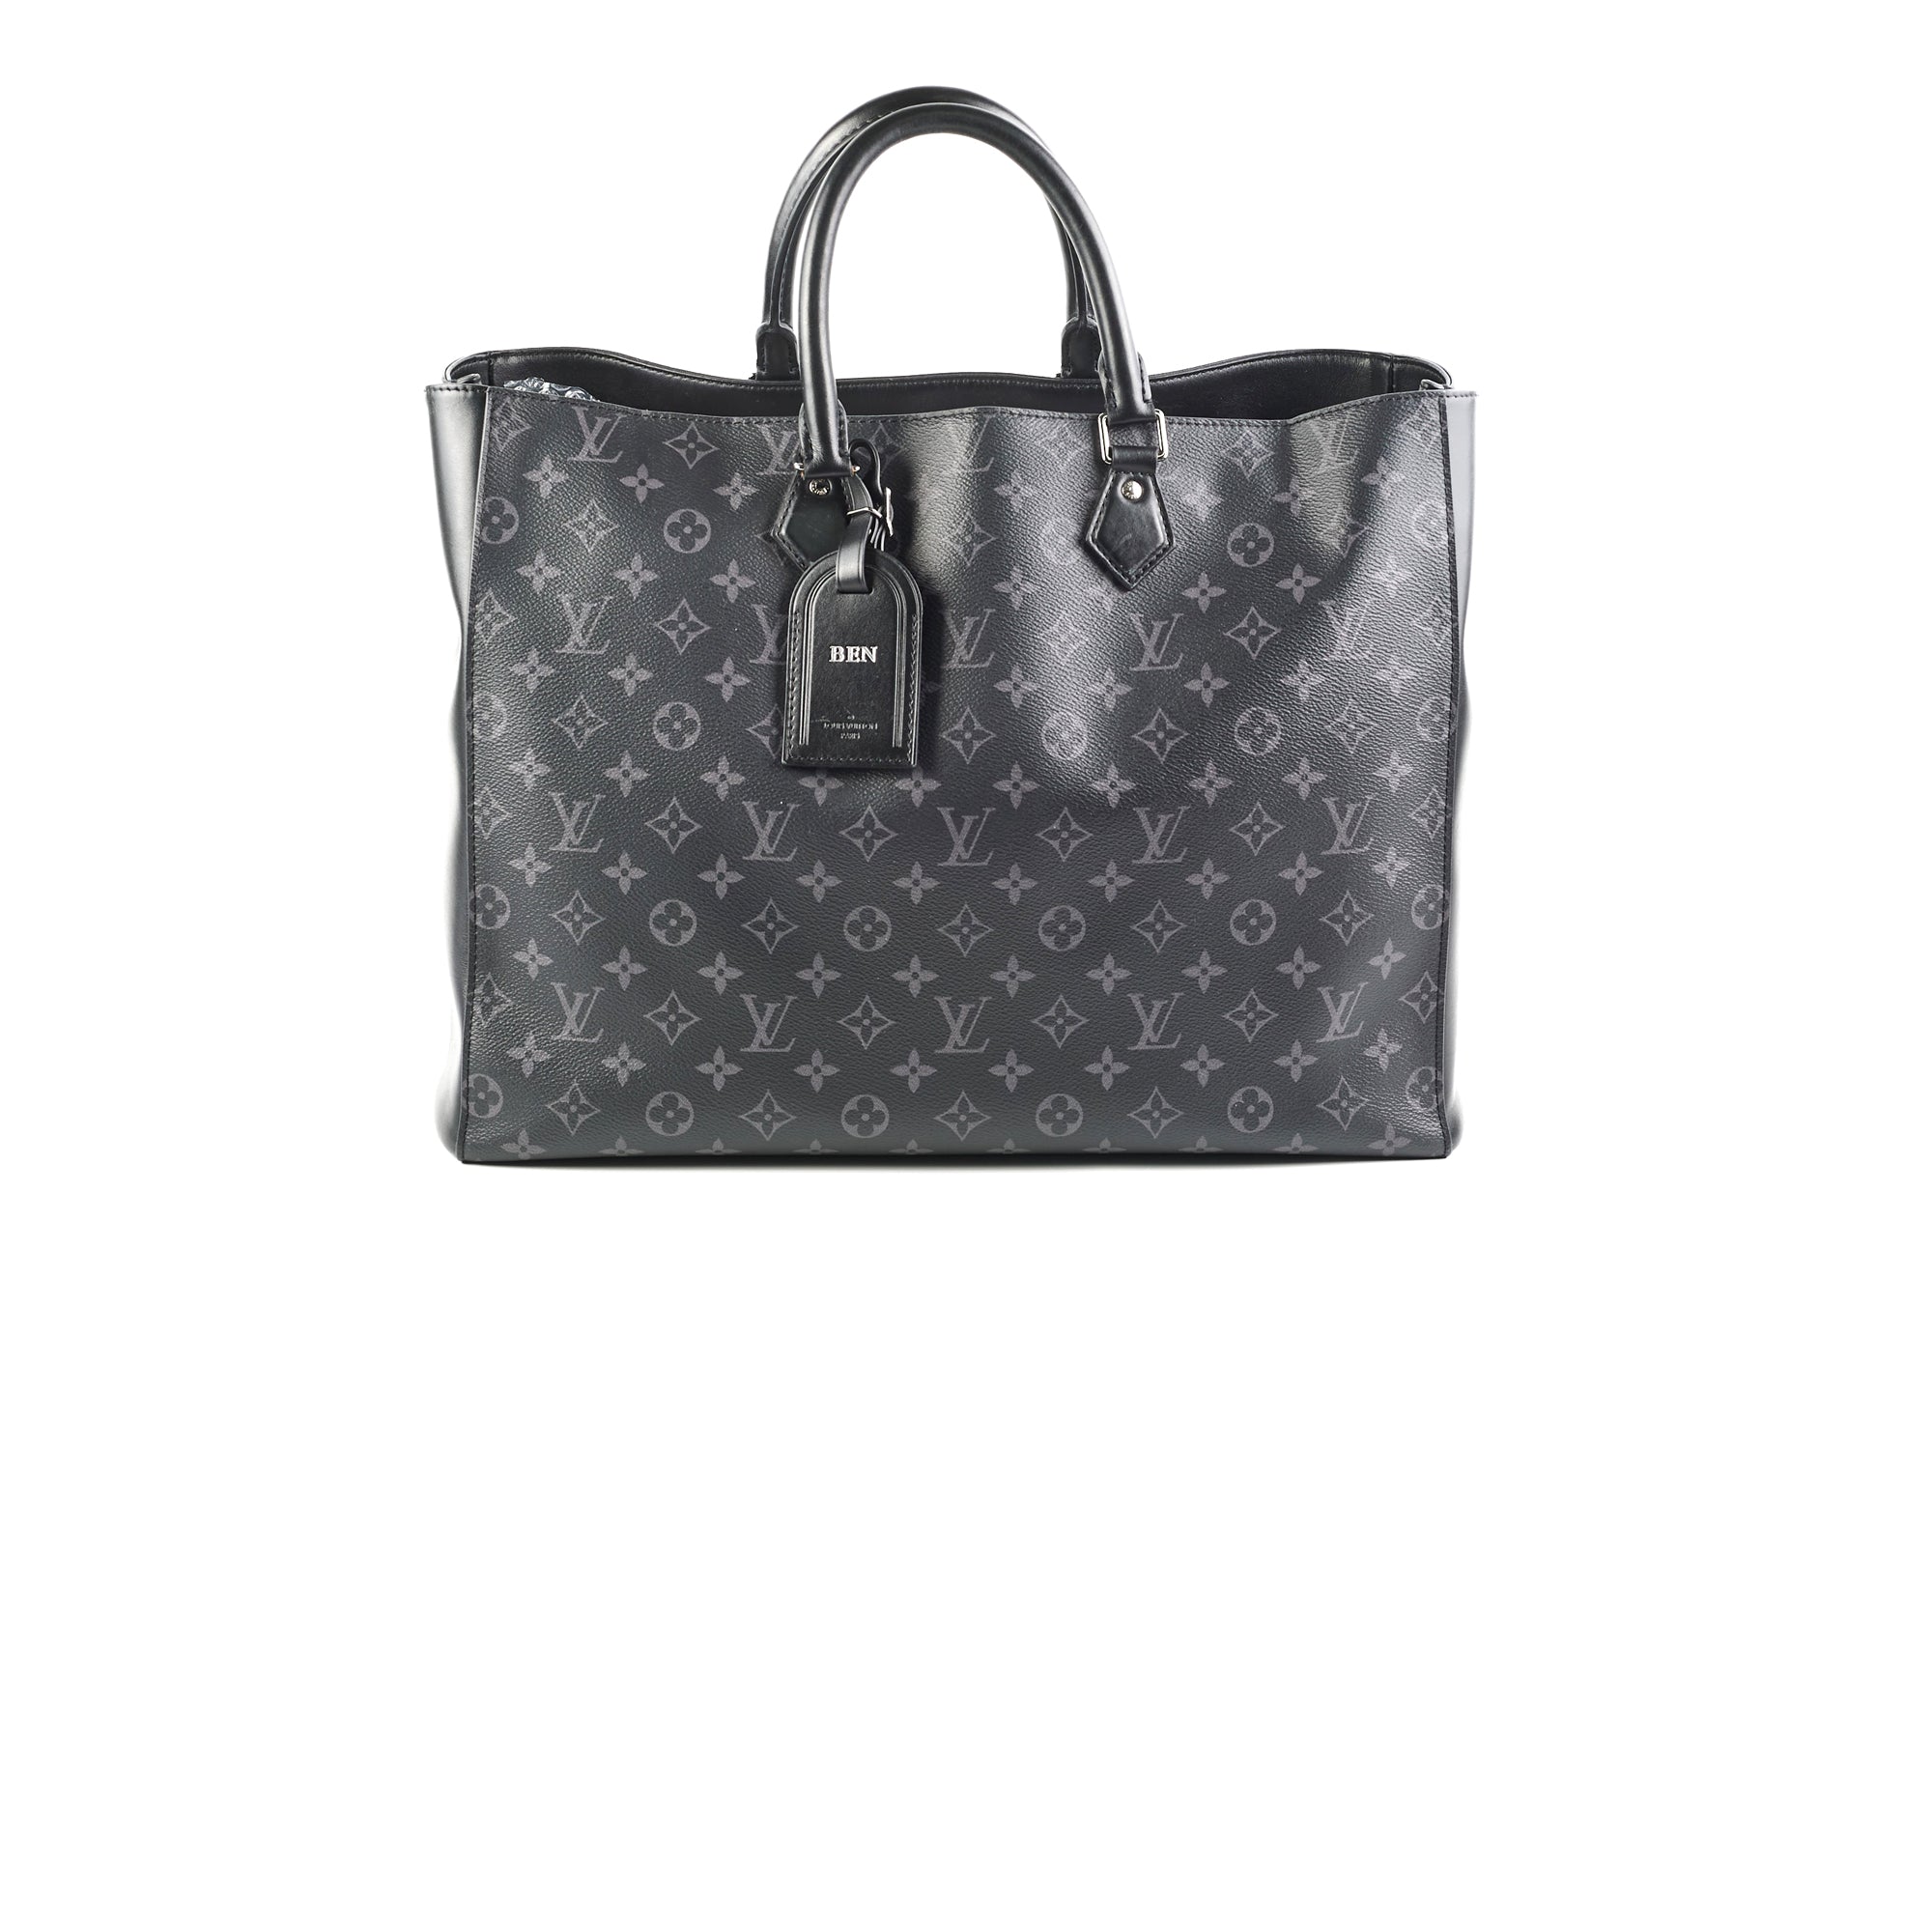 Grand sac à dos femme authentique Louis Vuitton monogramme